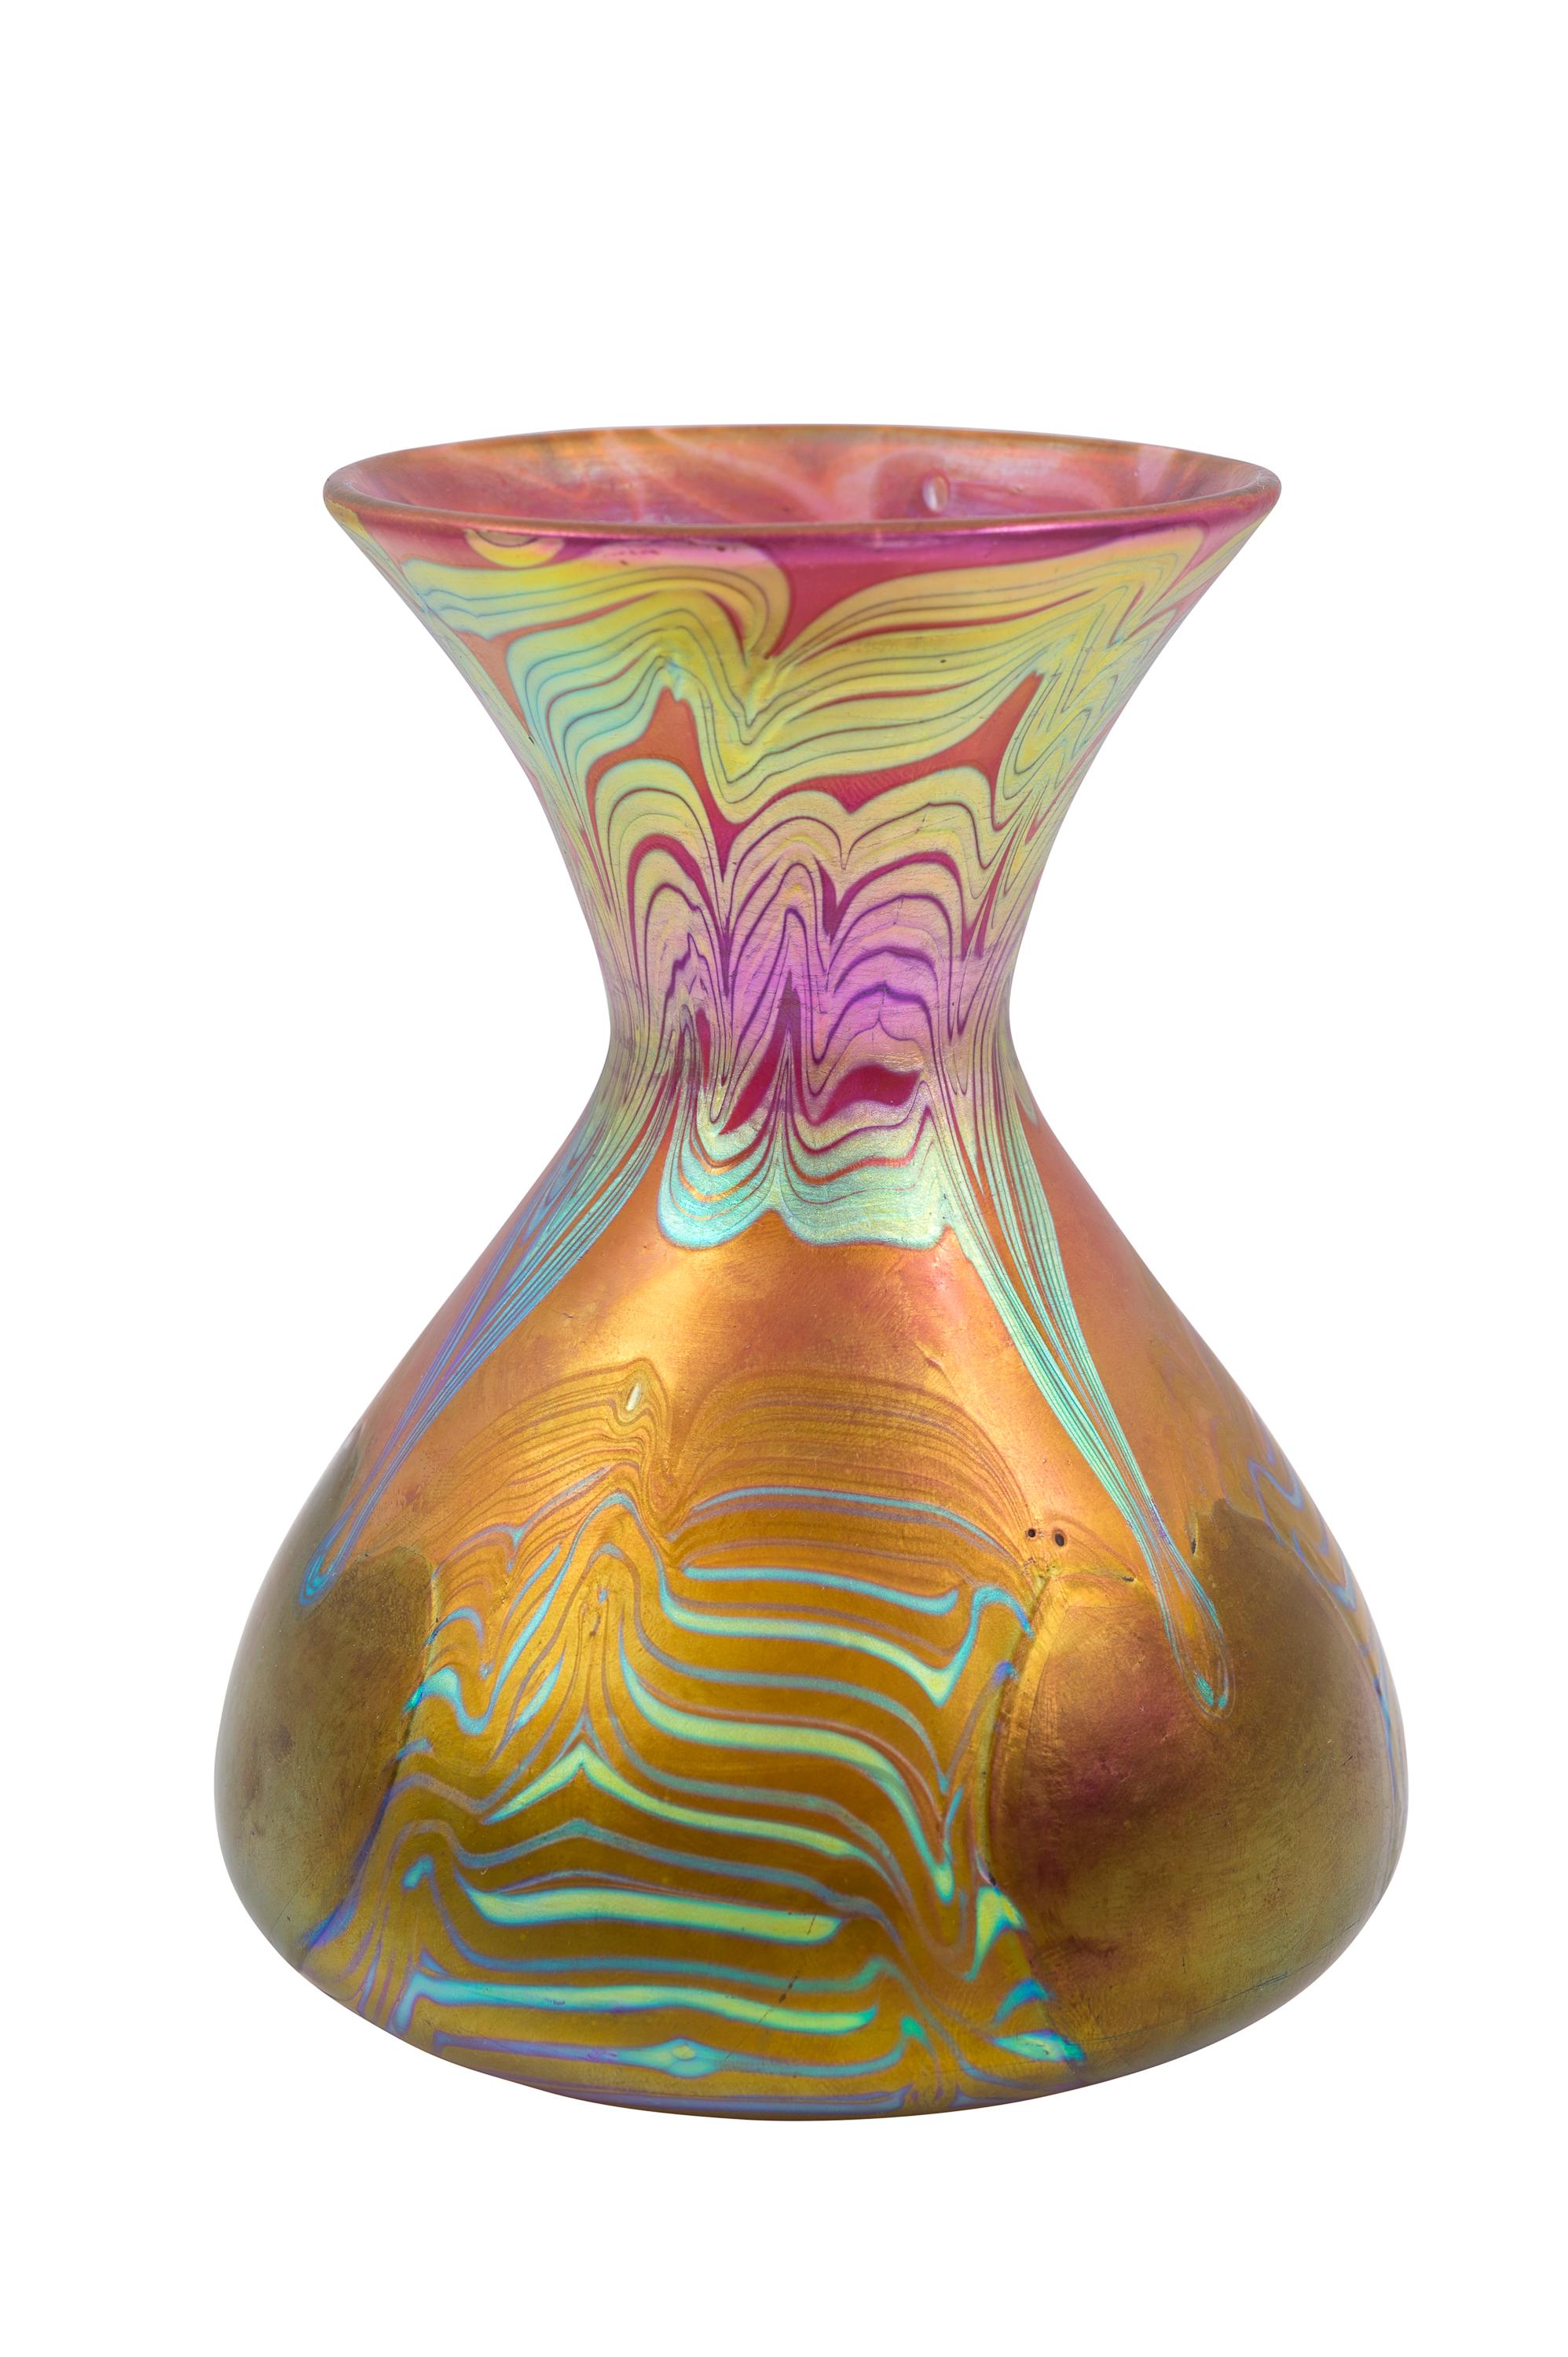 Jugendstil Glass Vase Loetz PG 3/492 Decoration circa 1903 Pink Green Blue Art Nouveau For Sale